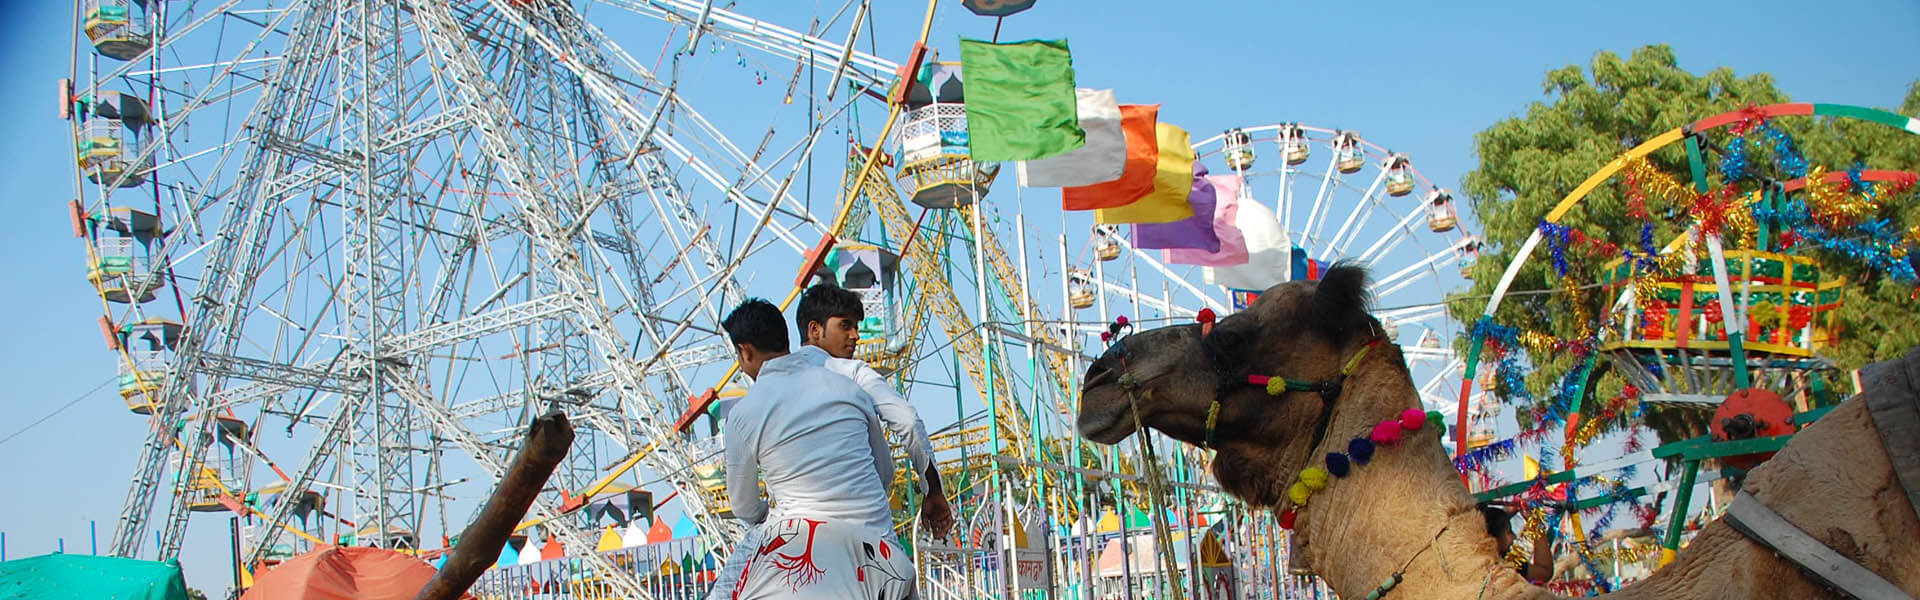 Pushkar Camel fair-Rajasthan Tour